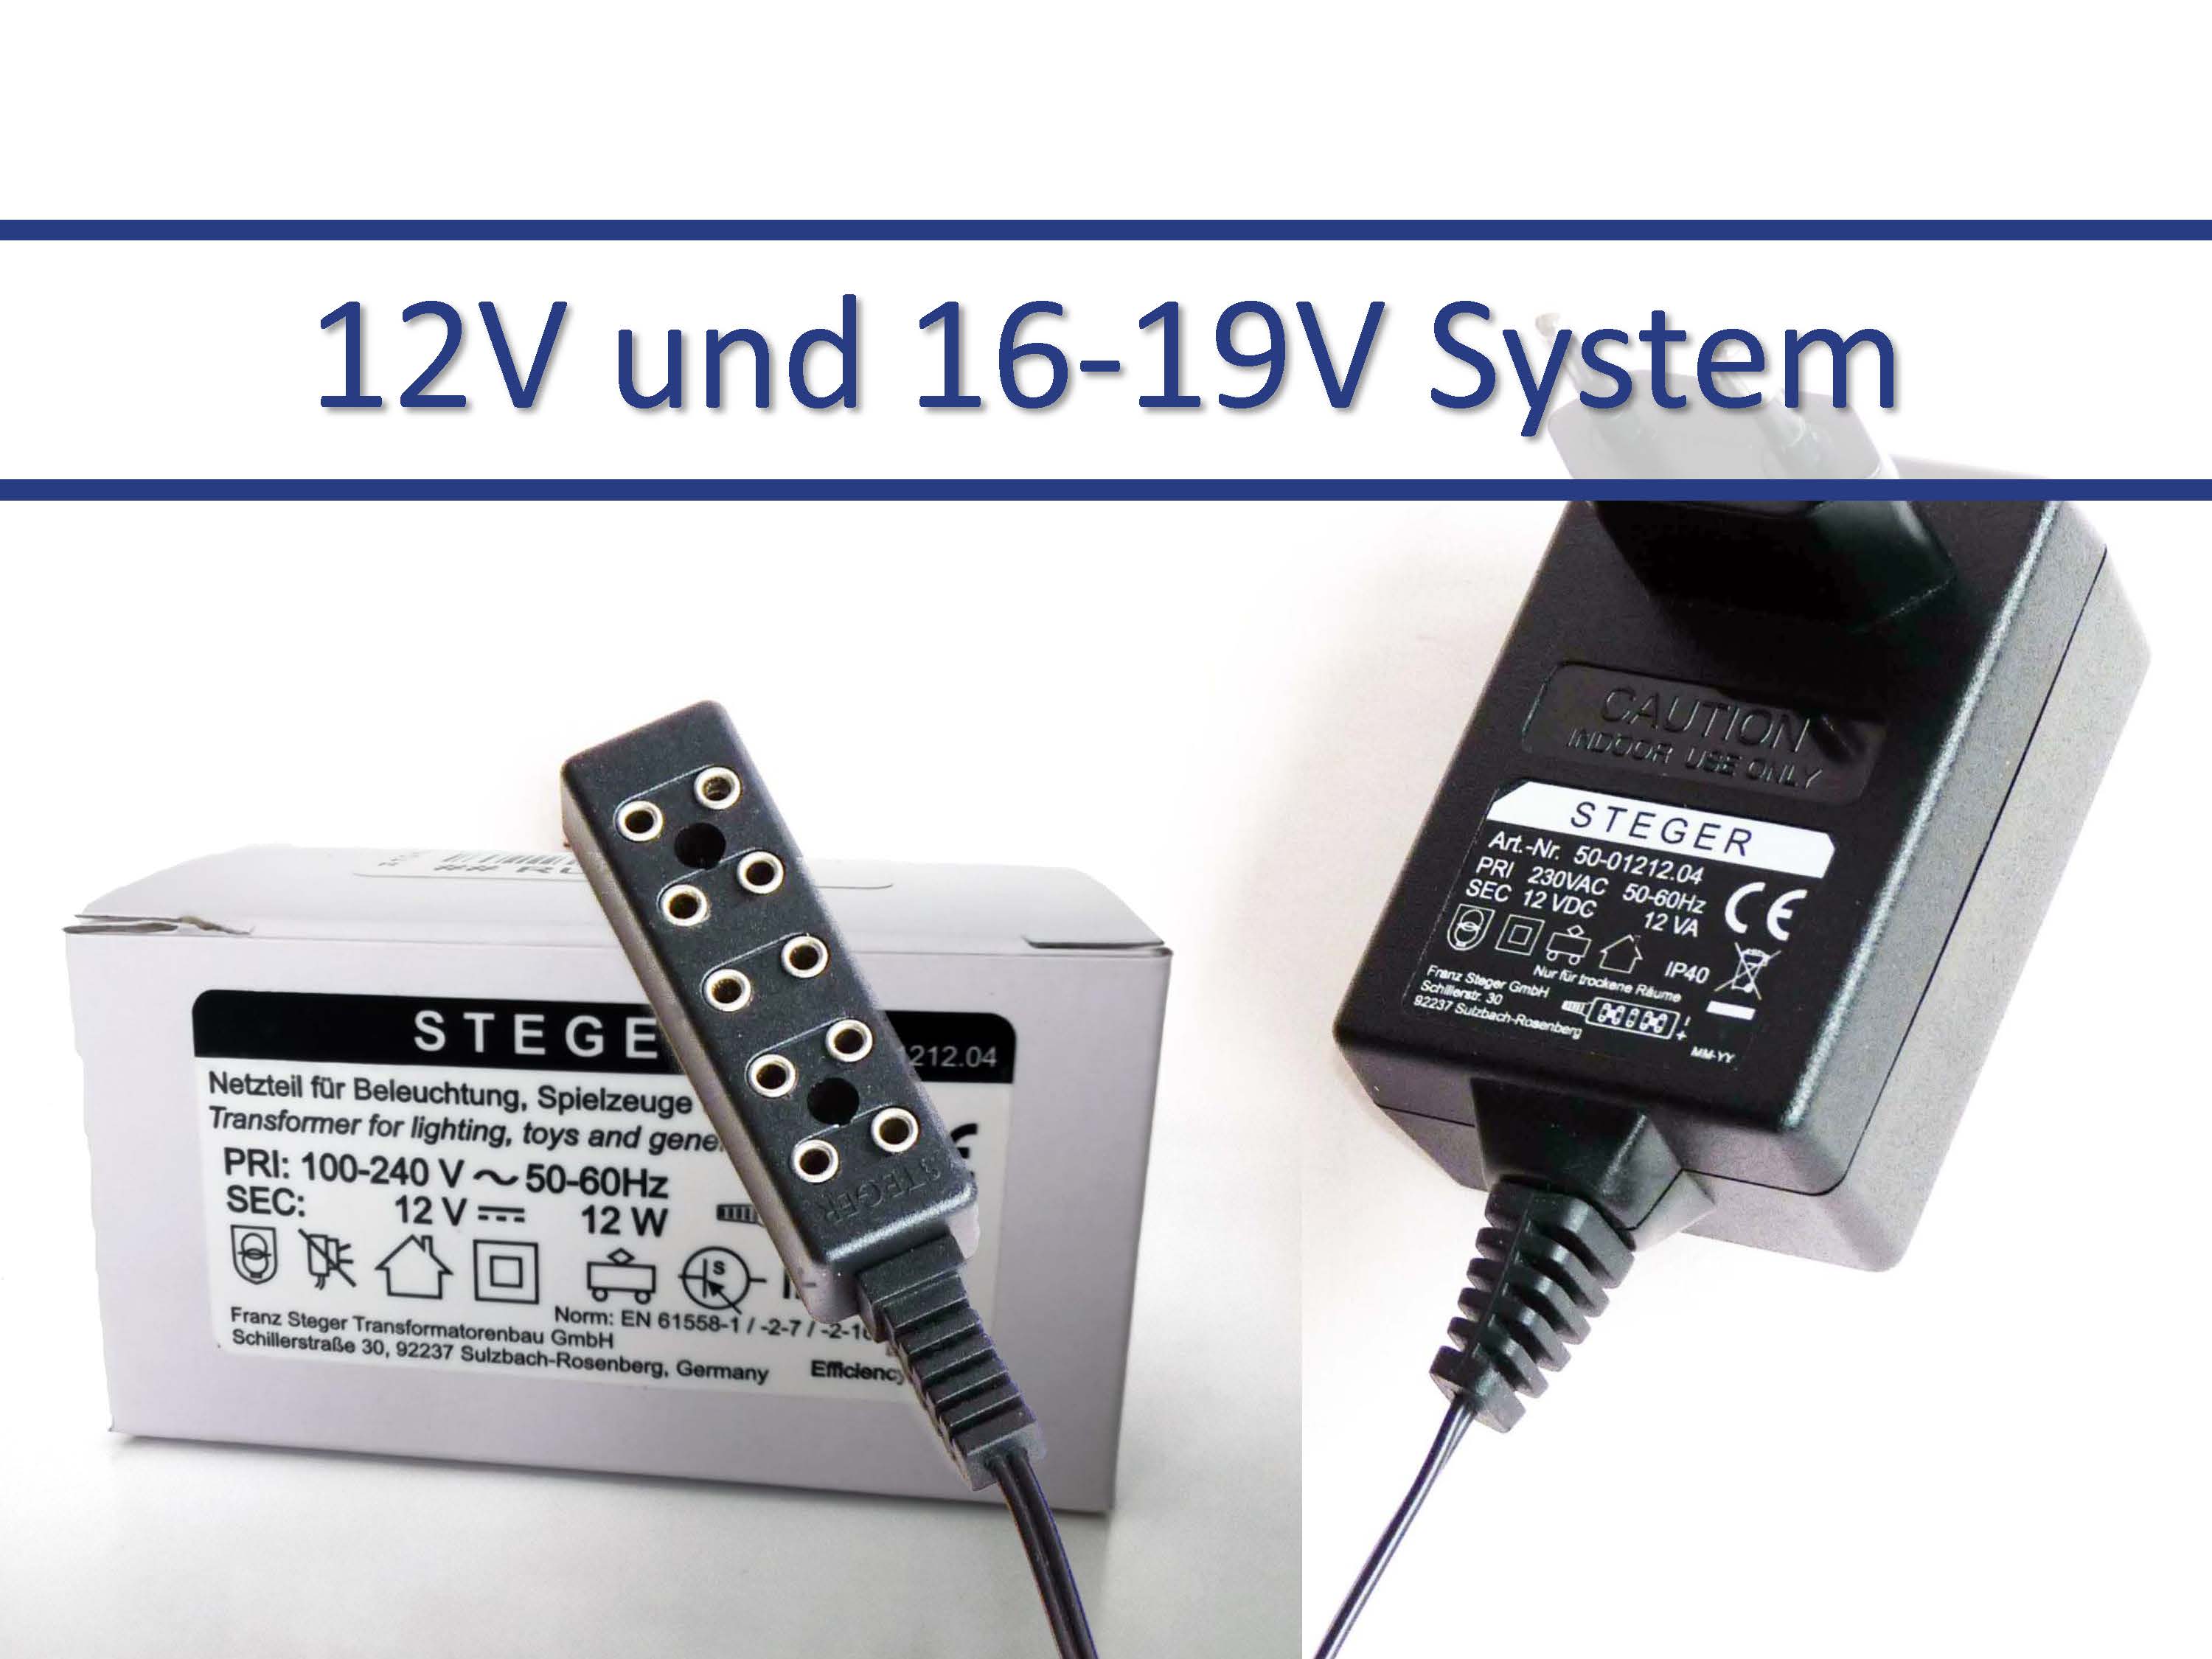 12V und 16-19V System